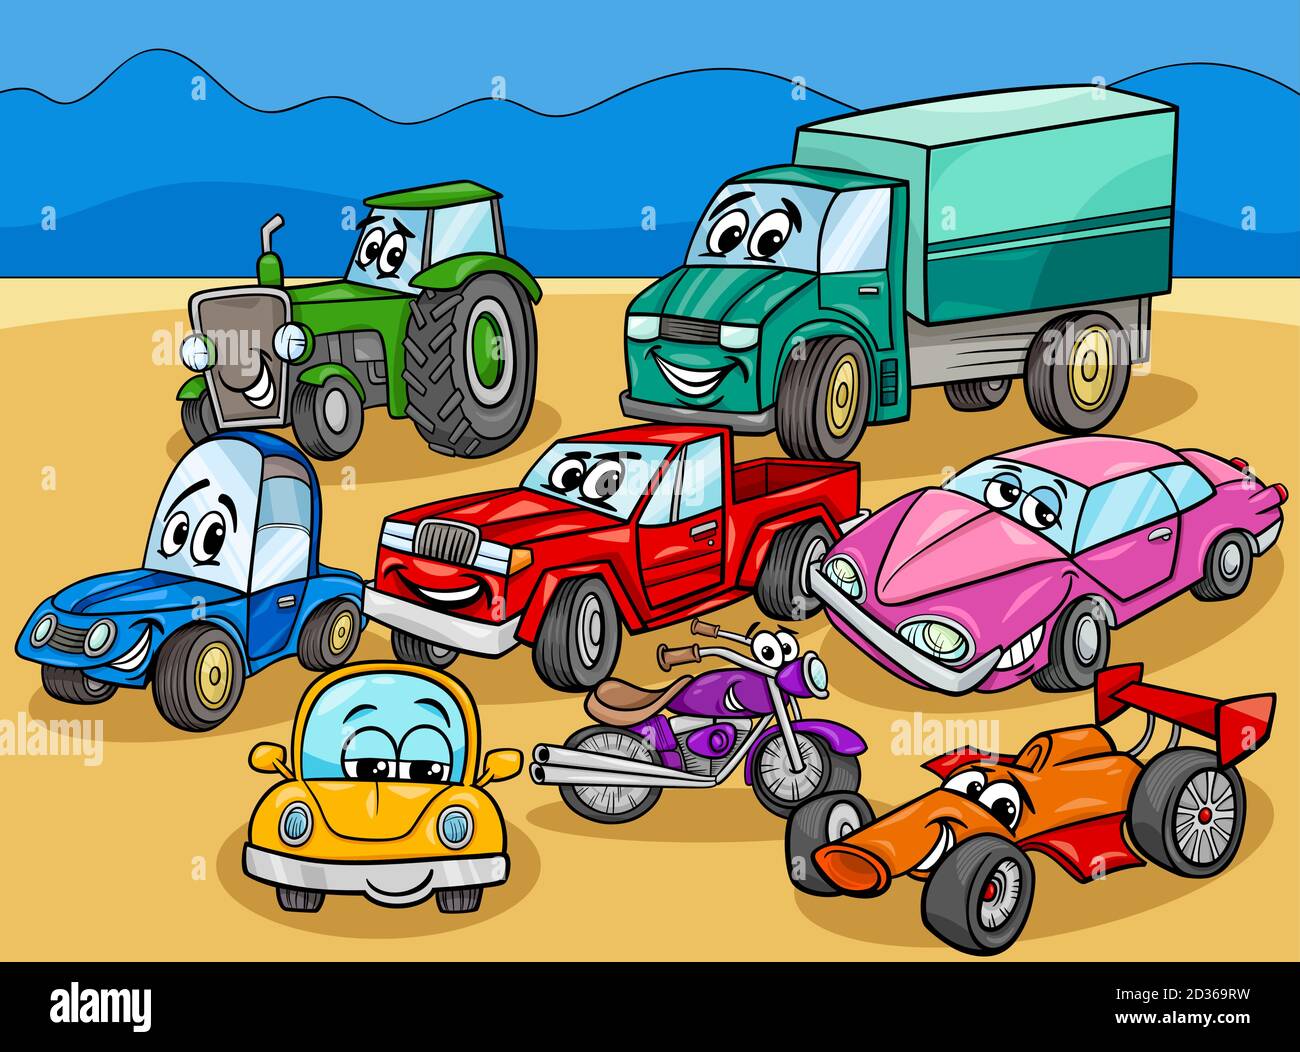 Dessin animé Illustration de voitures et véhicules Comic Characters Group Illustration de Vecteur